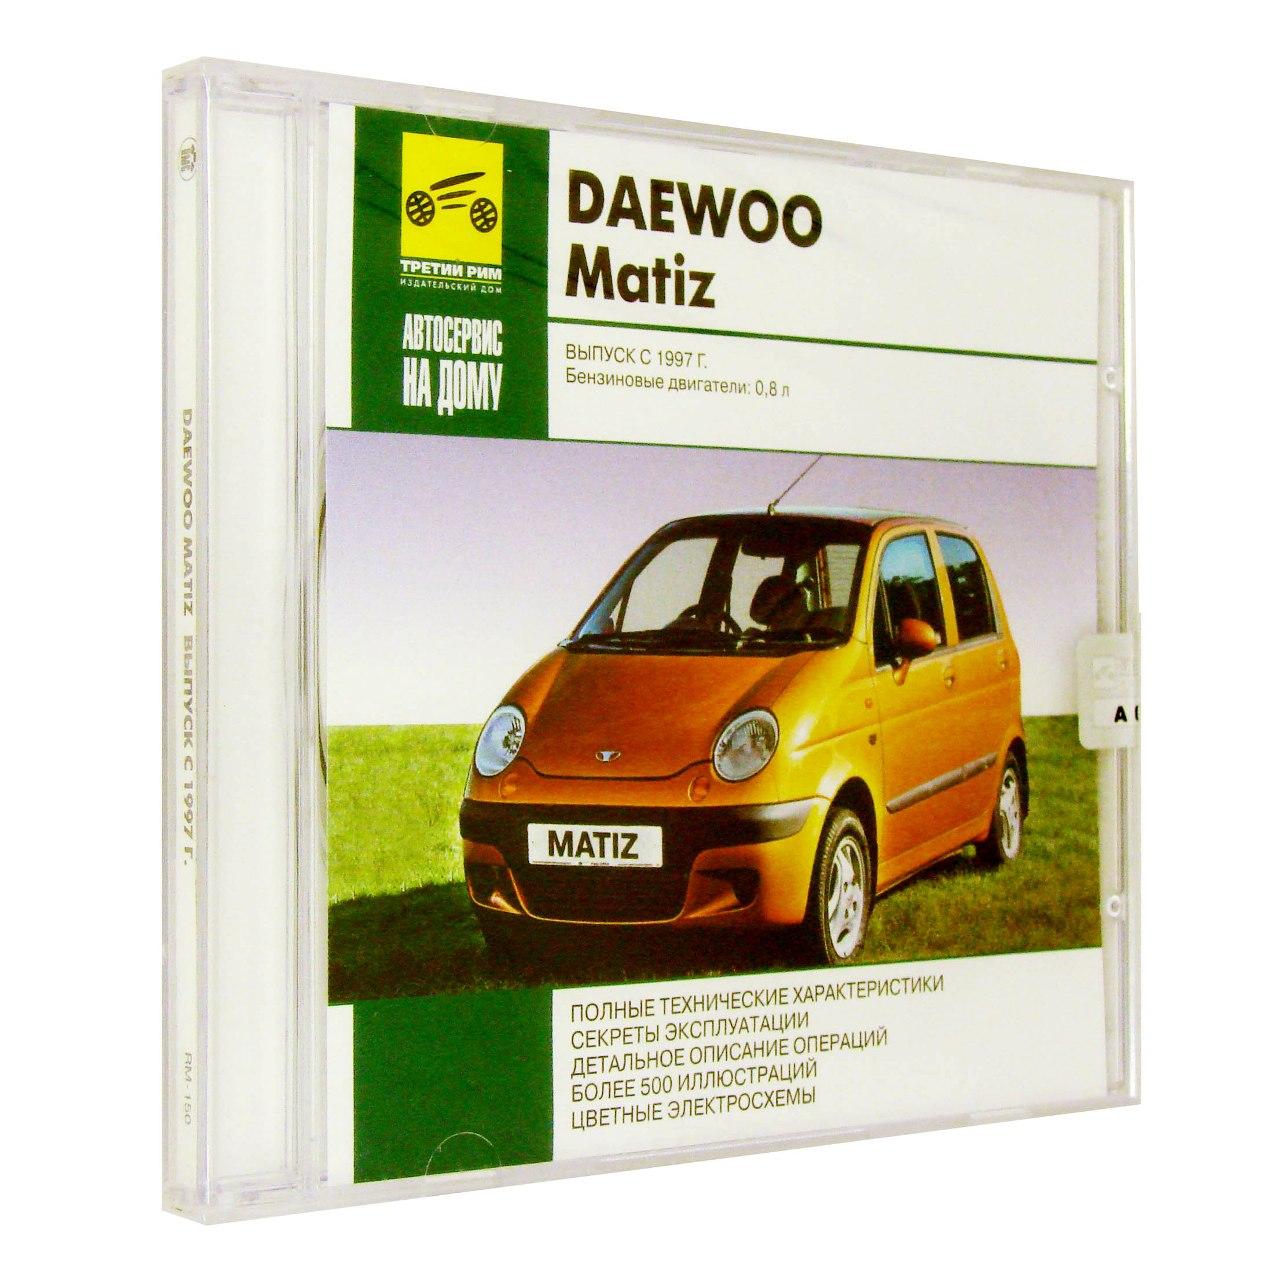 Компьютерный компакт-диск Daewoo Matiz Выпуск с 1997 Автосервис на дому. (ПК), фирма "RMG Multimedia", 1CD